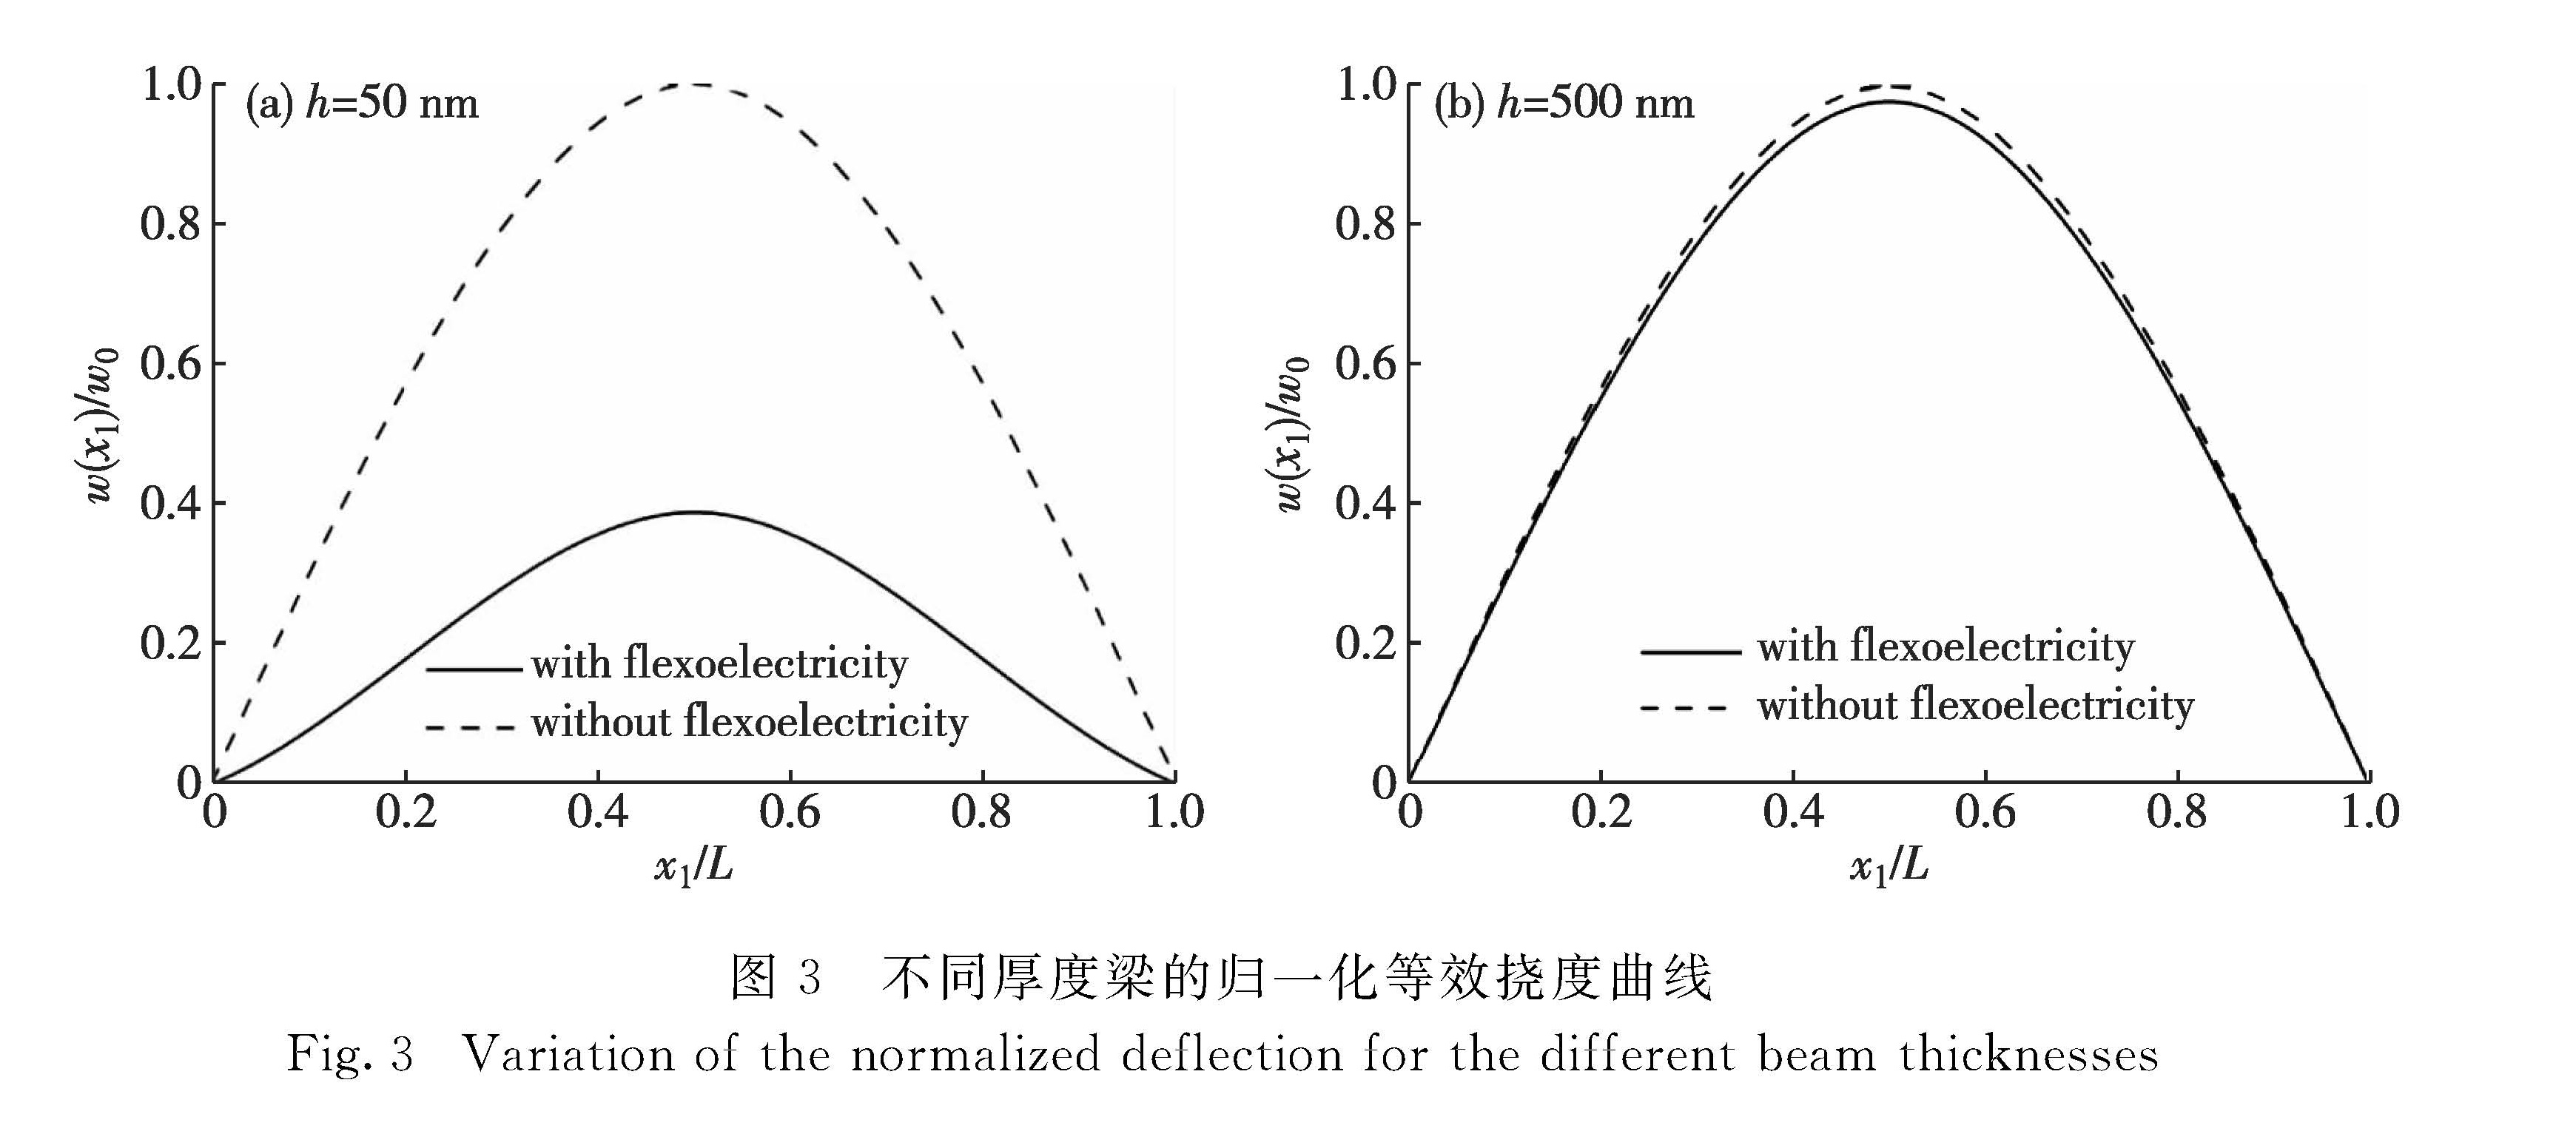 图3 不同厚度梁的归一化等效挠度曲线<br/>Fig.3 Variation of the normalized deflection for the different beam thicknesses